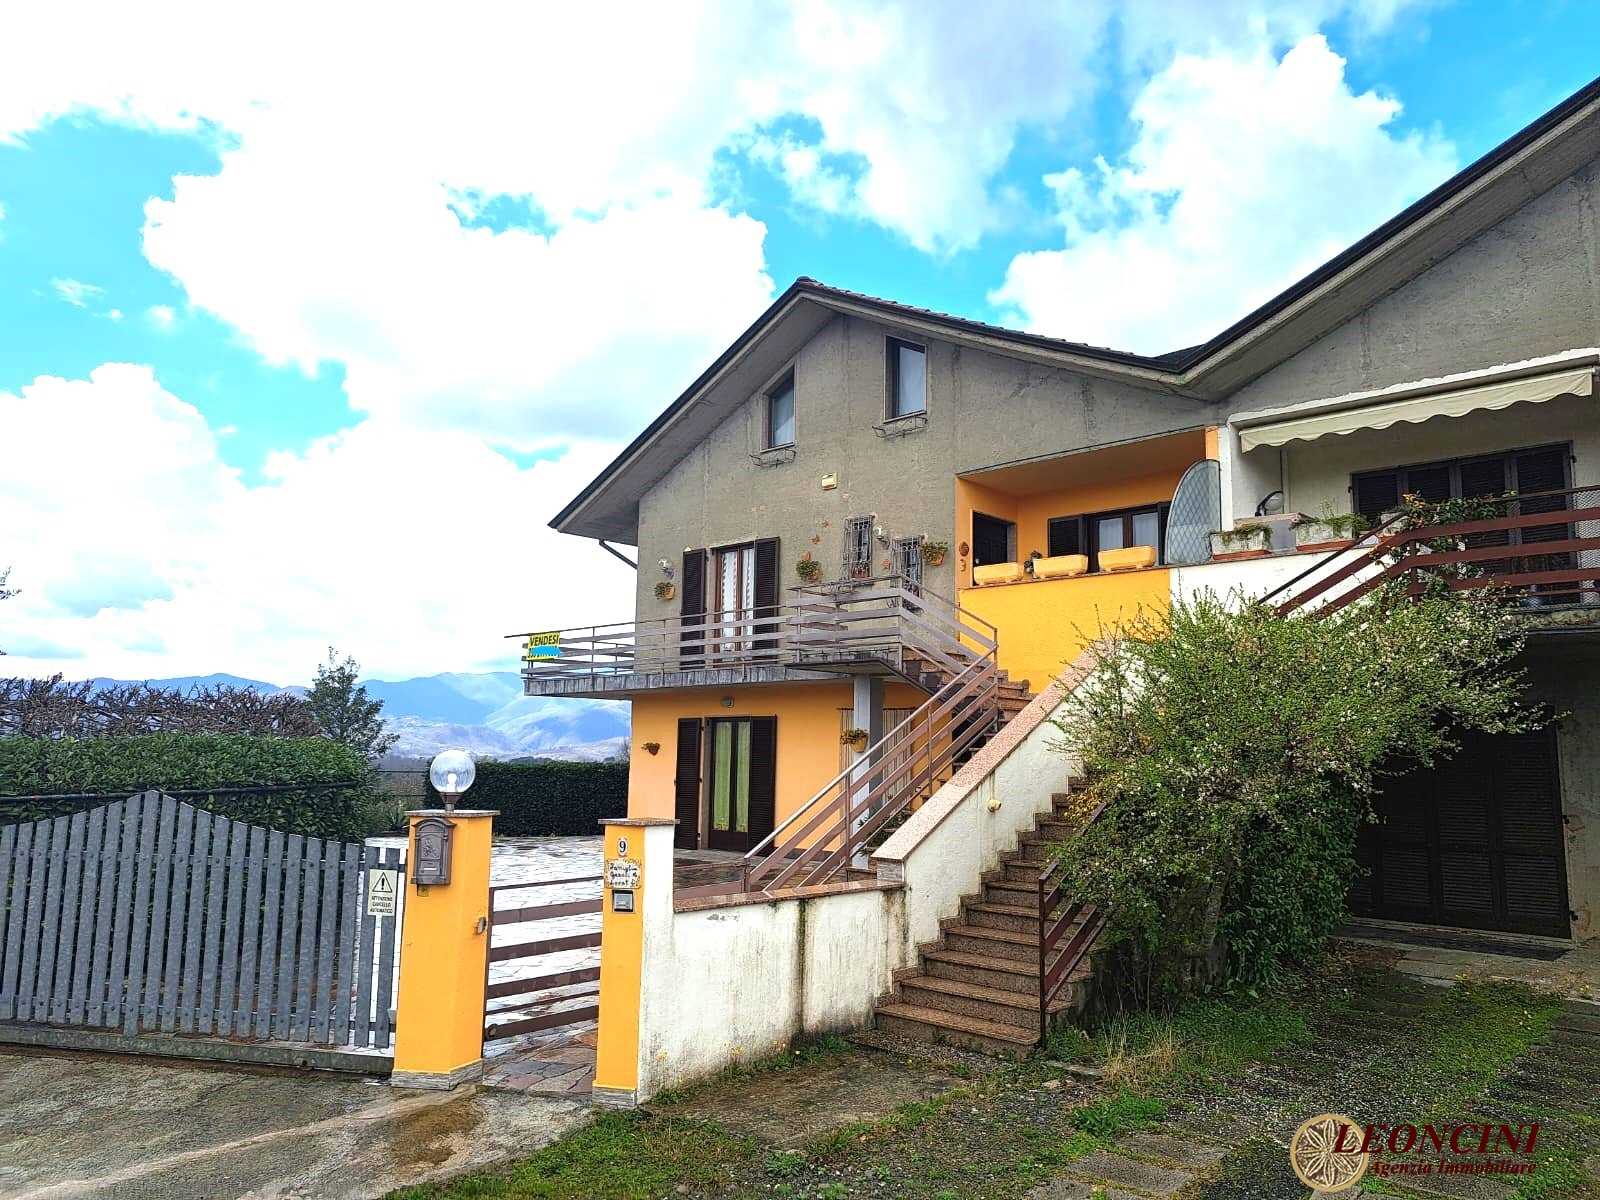 Casa Bi - Trifamiliare in Vendita a Licciana Nardi Via Cadrecca